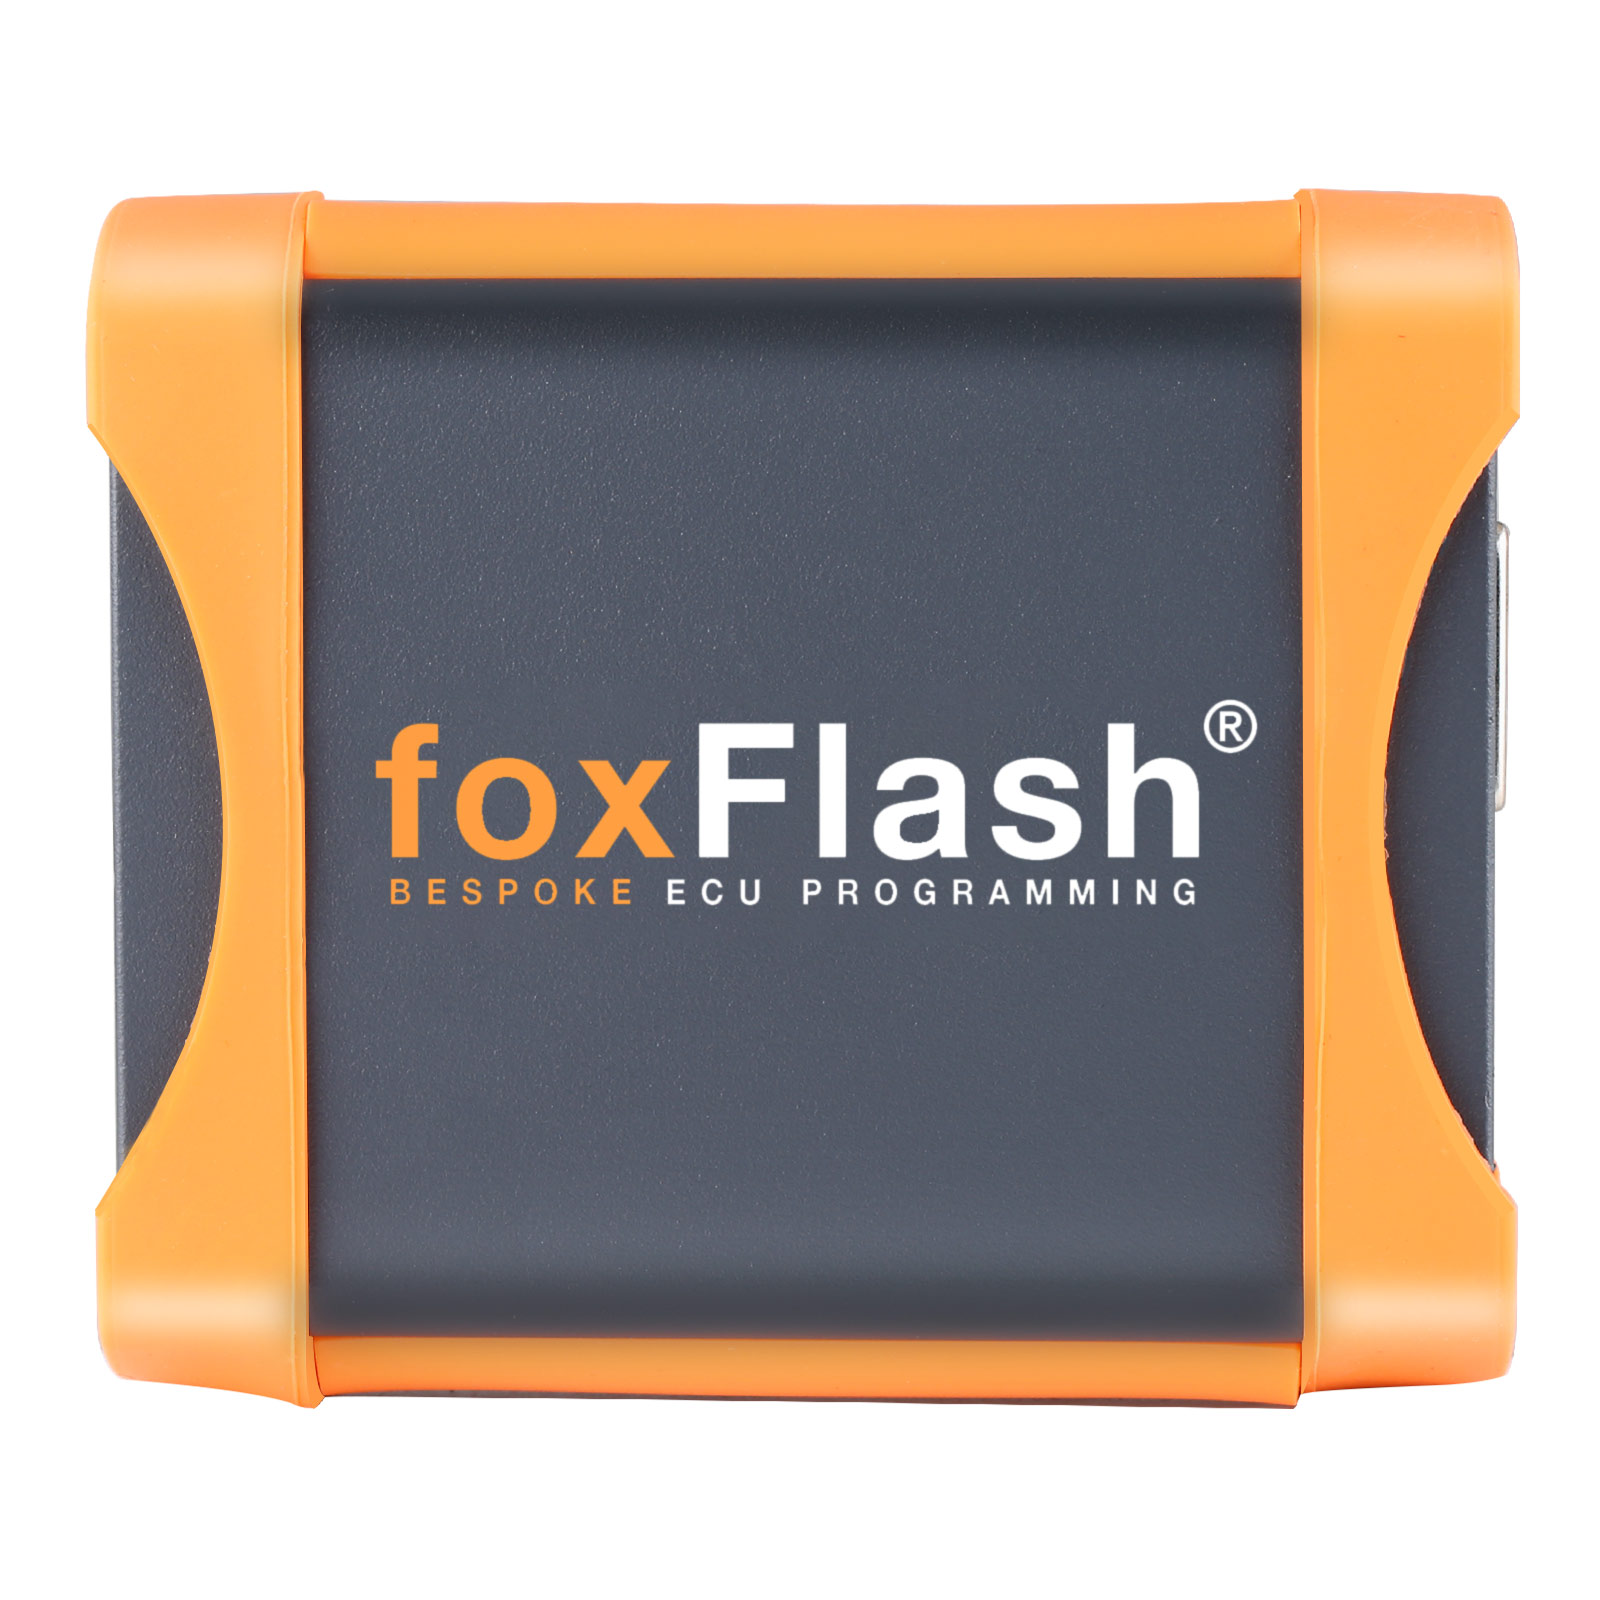 New Fox Flash